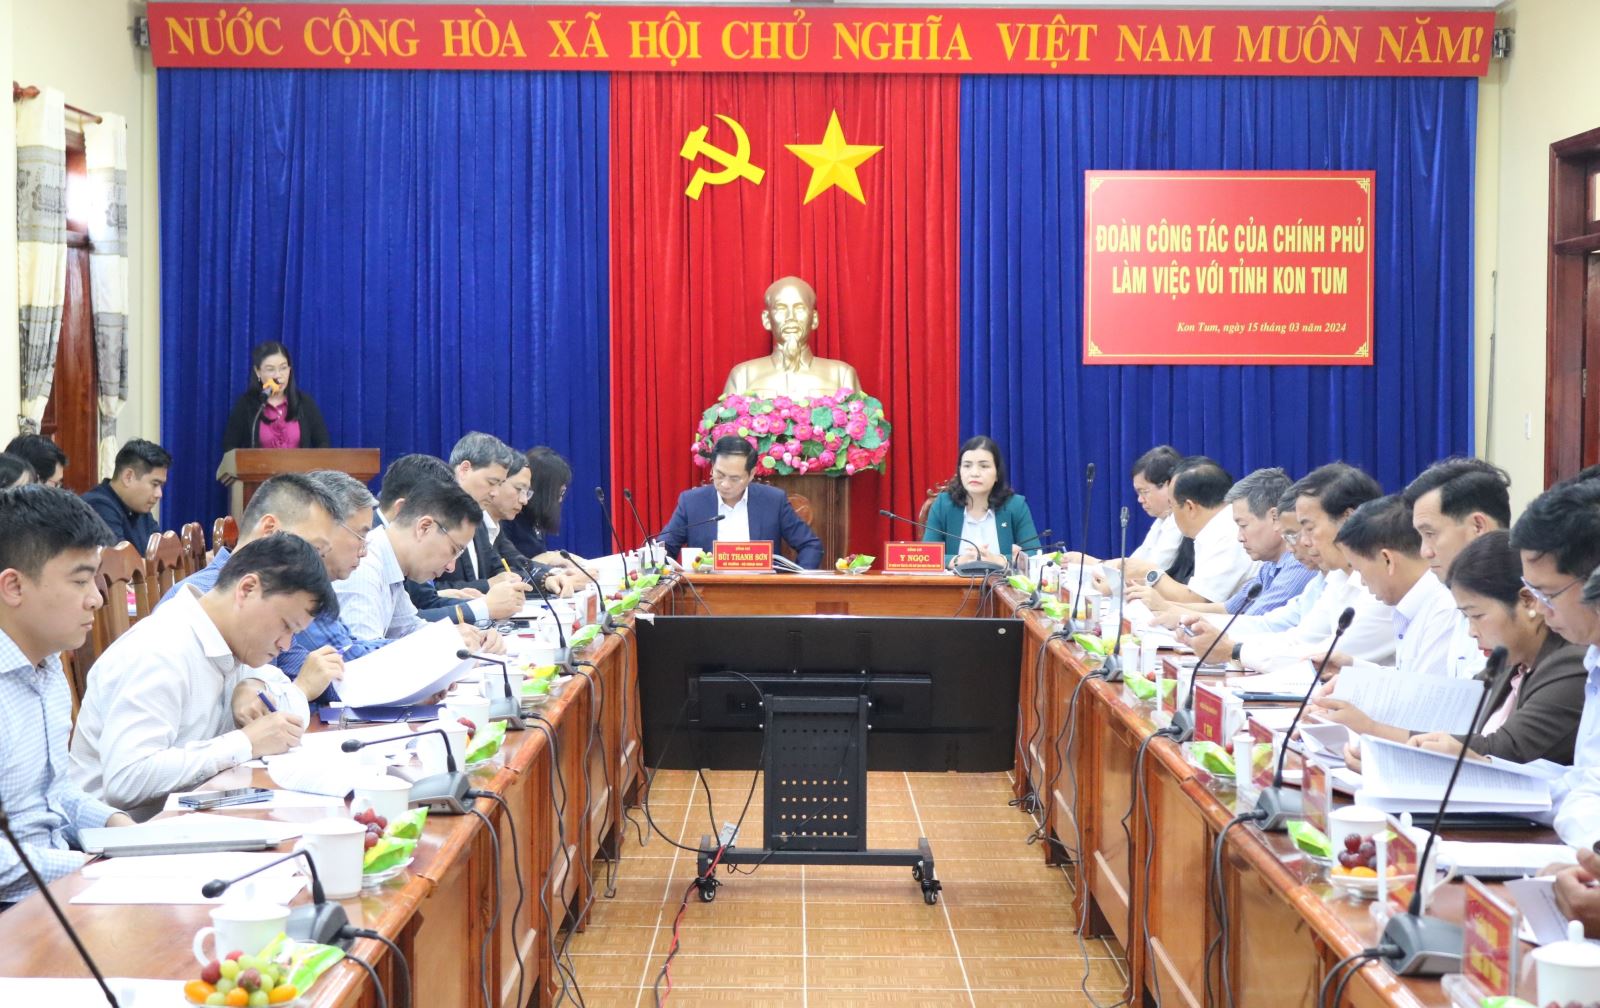 Đoàn công tác của Chính phủ làm việc với tỉnh Kon Tum